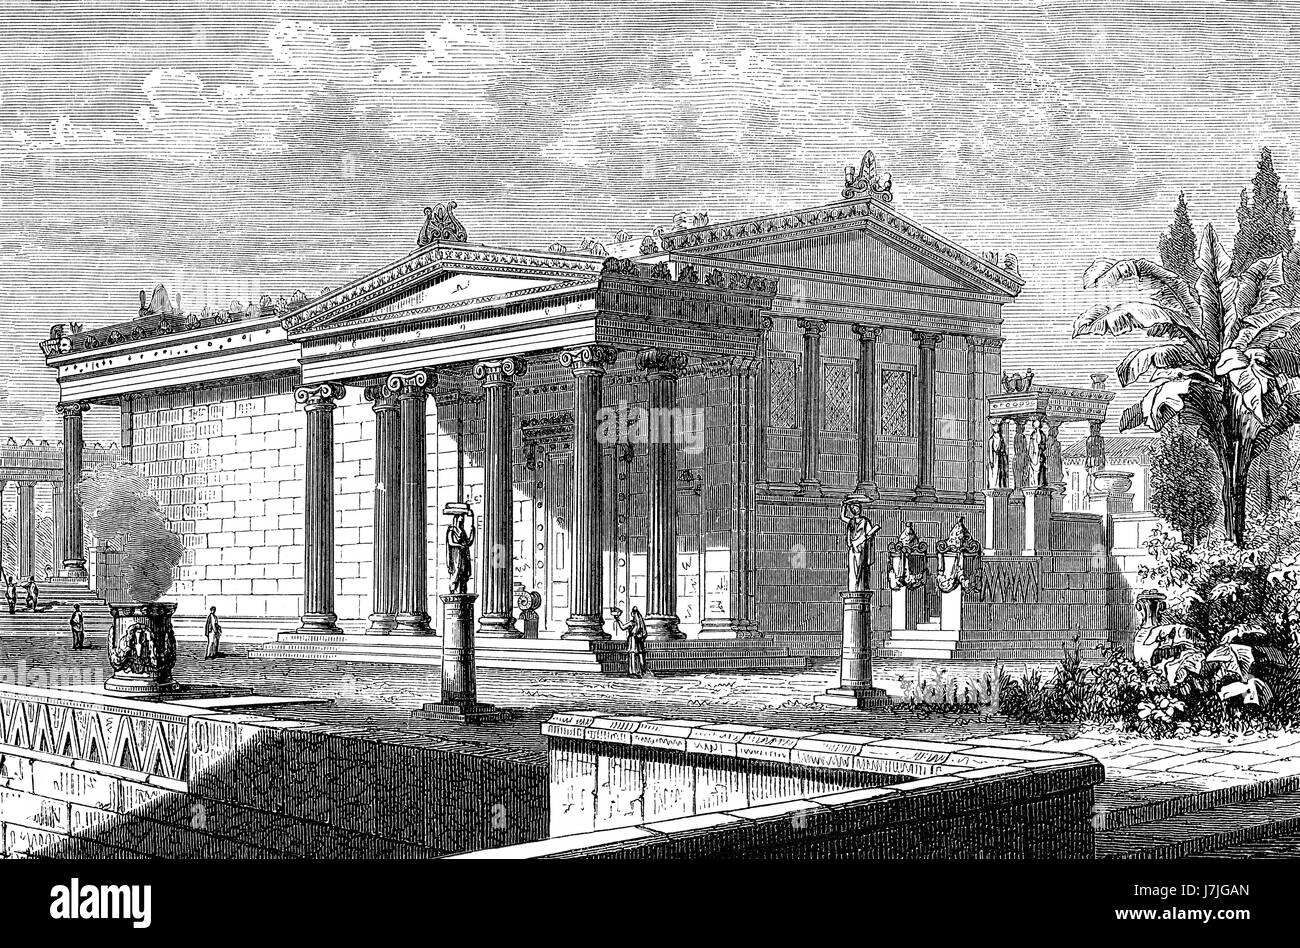 La reconstruction de l'Erechtheion ou Erechtheum, un ancien temple grec sur le côté nord de l'acropole d'Athènes en Grèce Banque D'Images